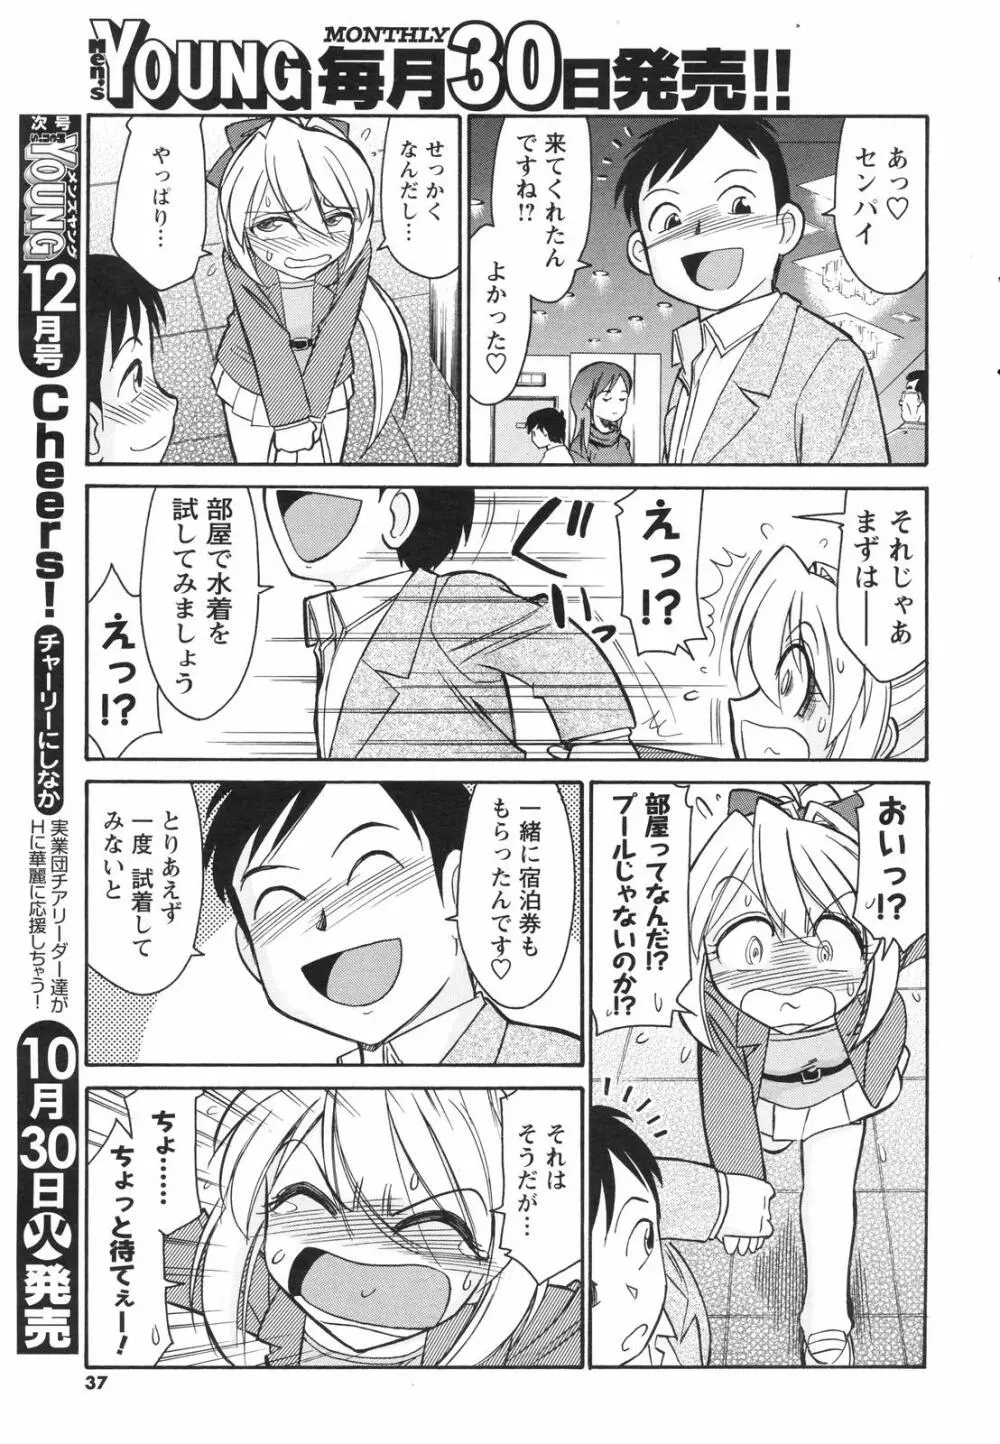 メンズヤングスペシャルIKAZUCHI雷 Vol.4 2007年12月号増刊 37ページ